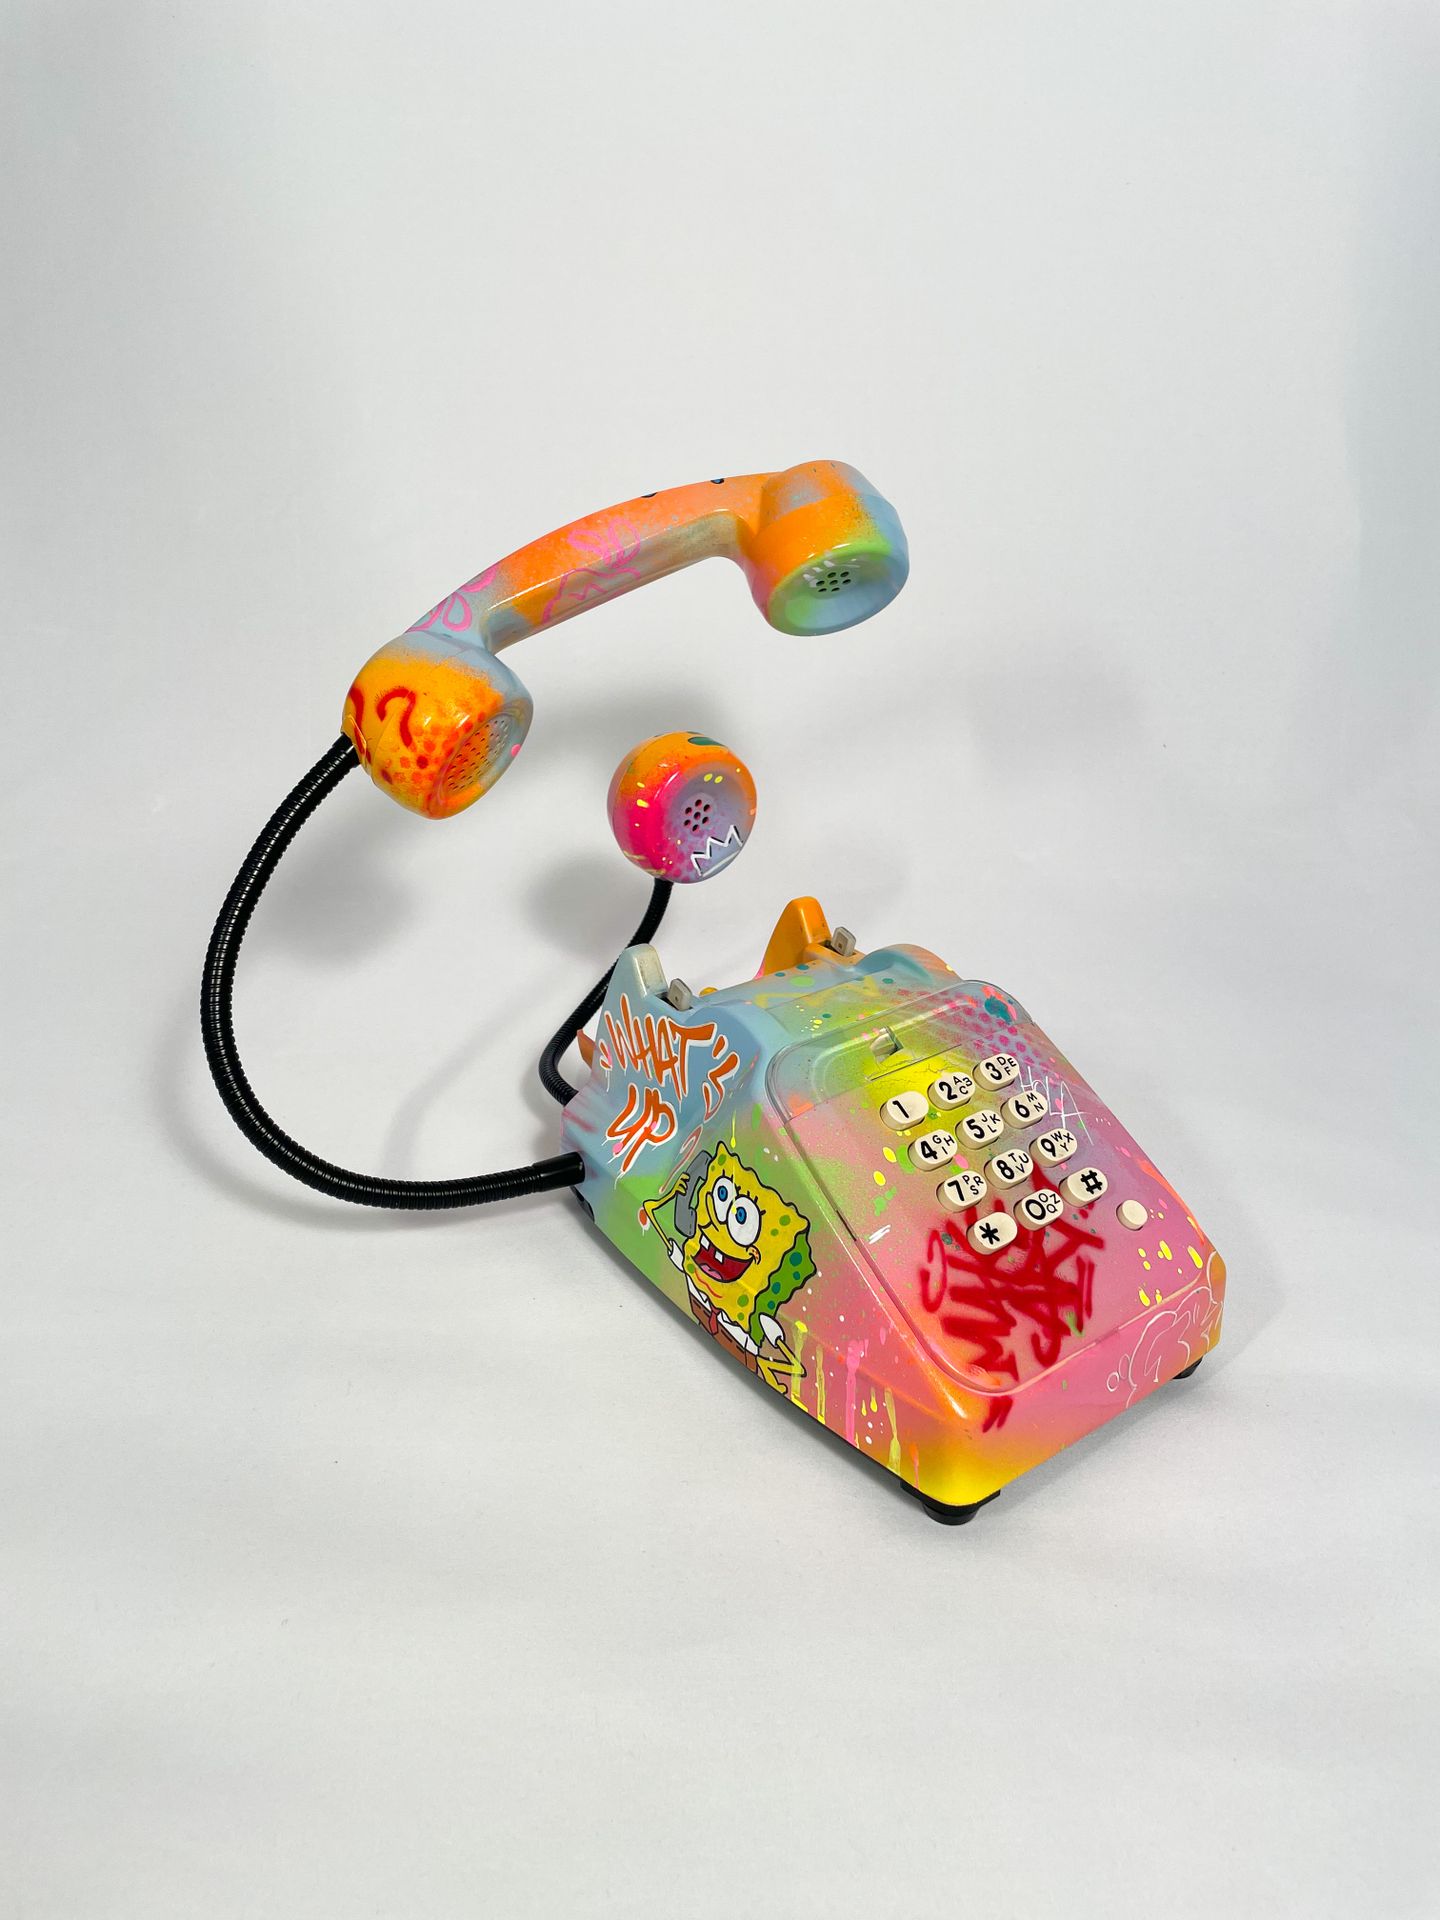 ANTHONY GRIP Bob Phone -

Technique mixte sur téléphone: 

Acrylique, aérosol

S&hellip;